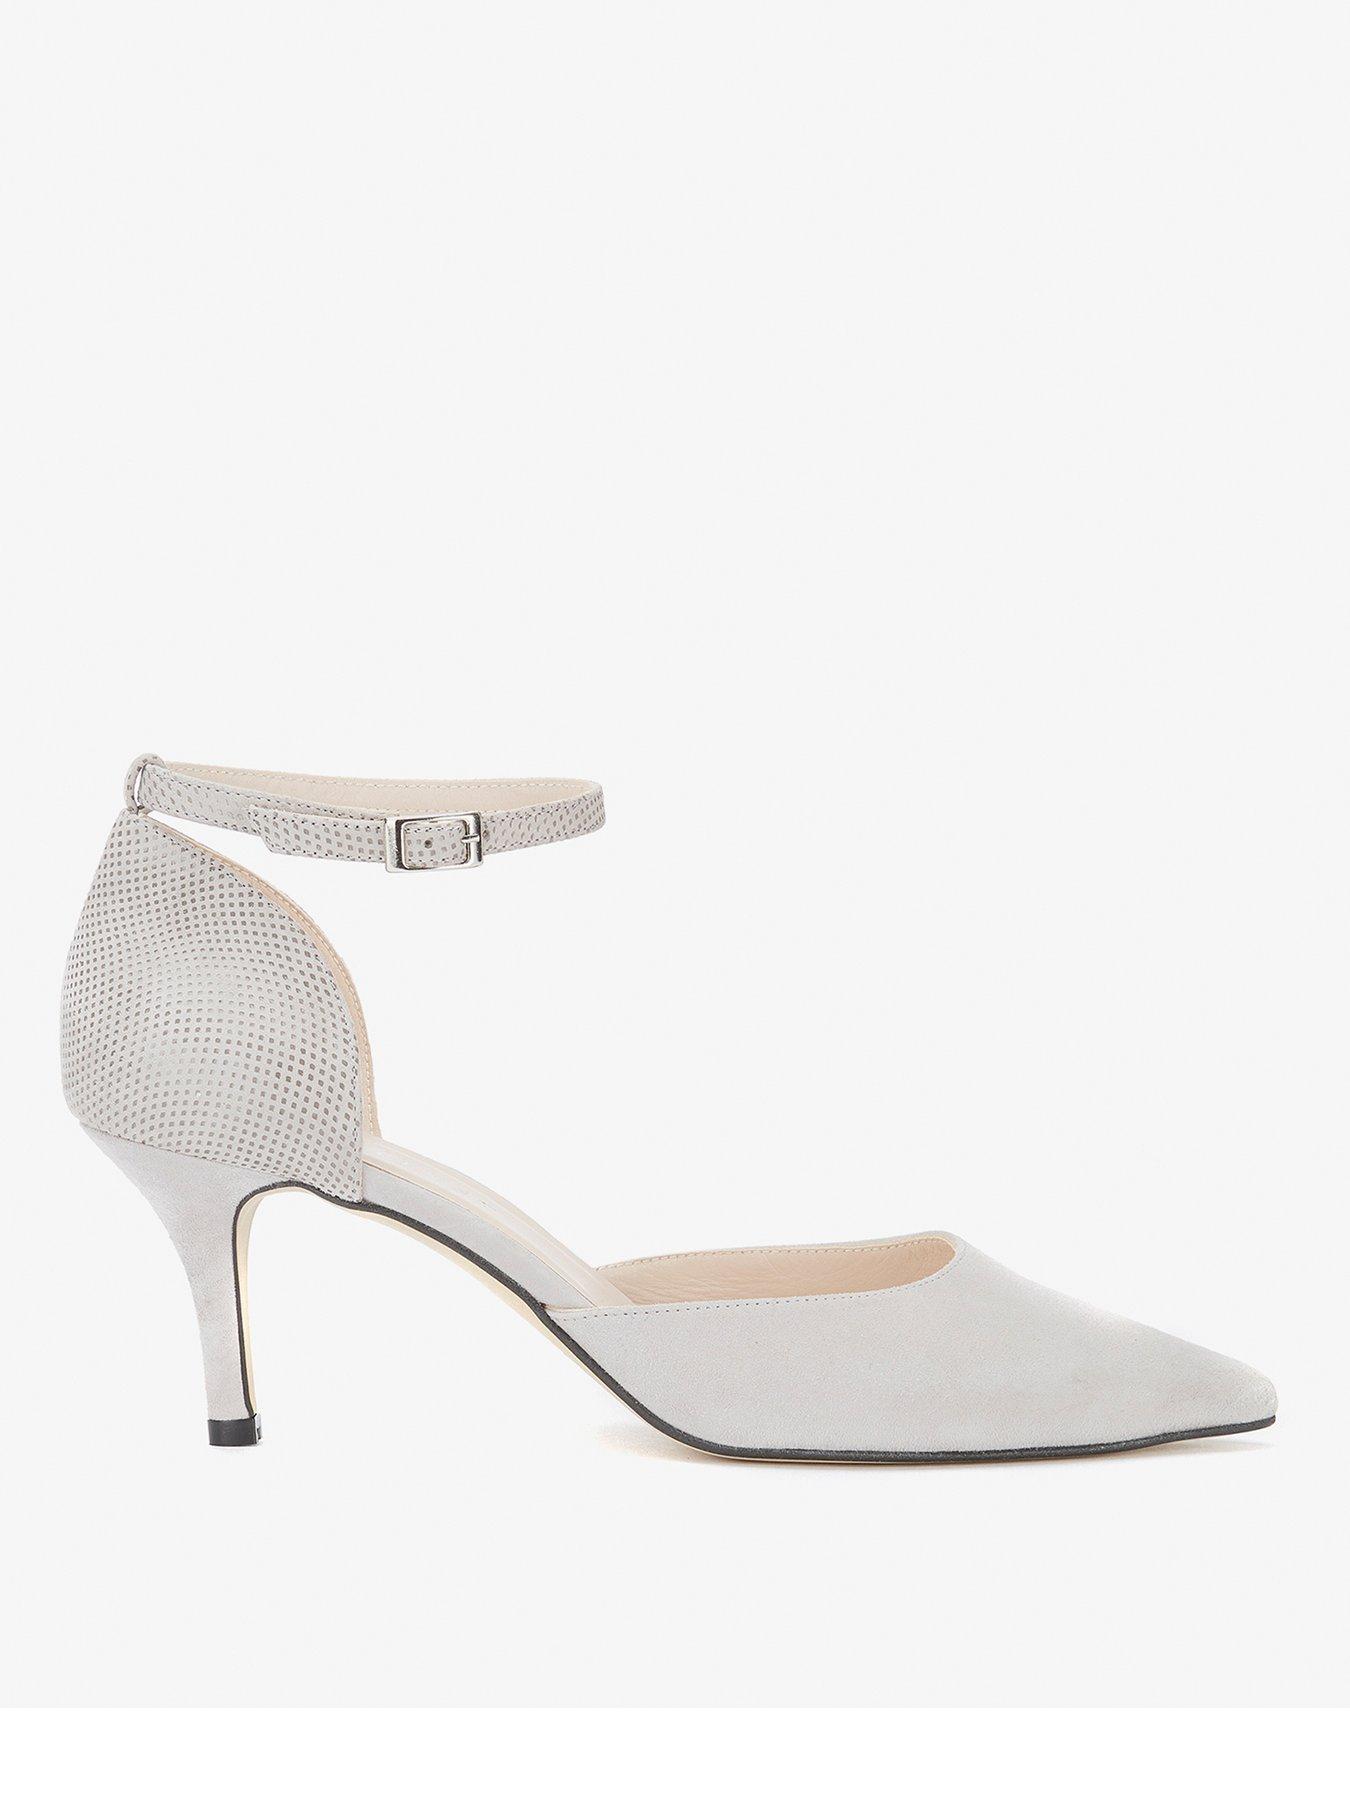 grey heels uk